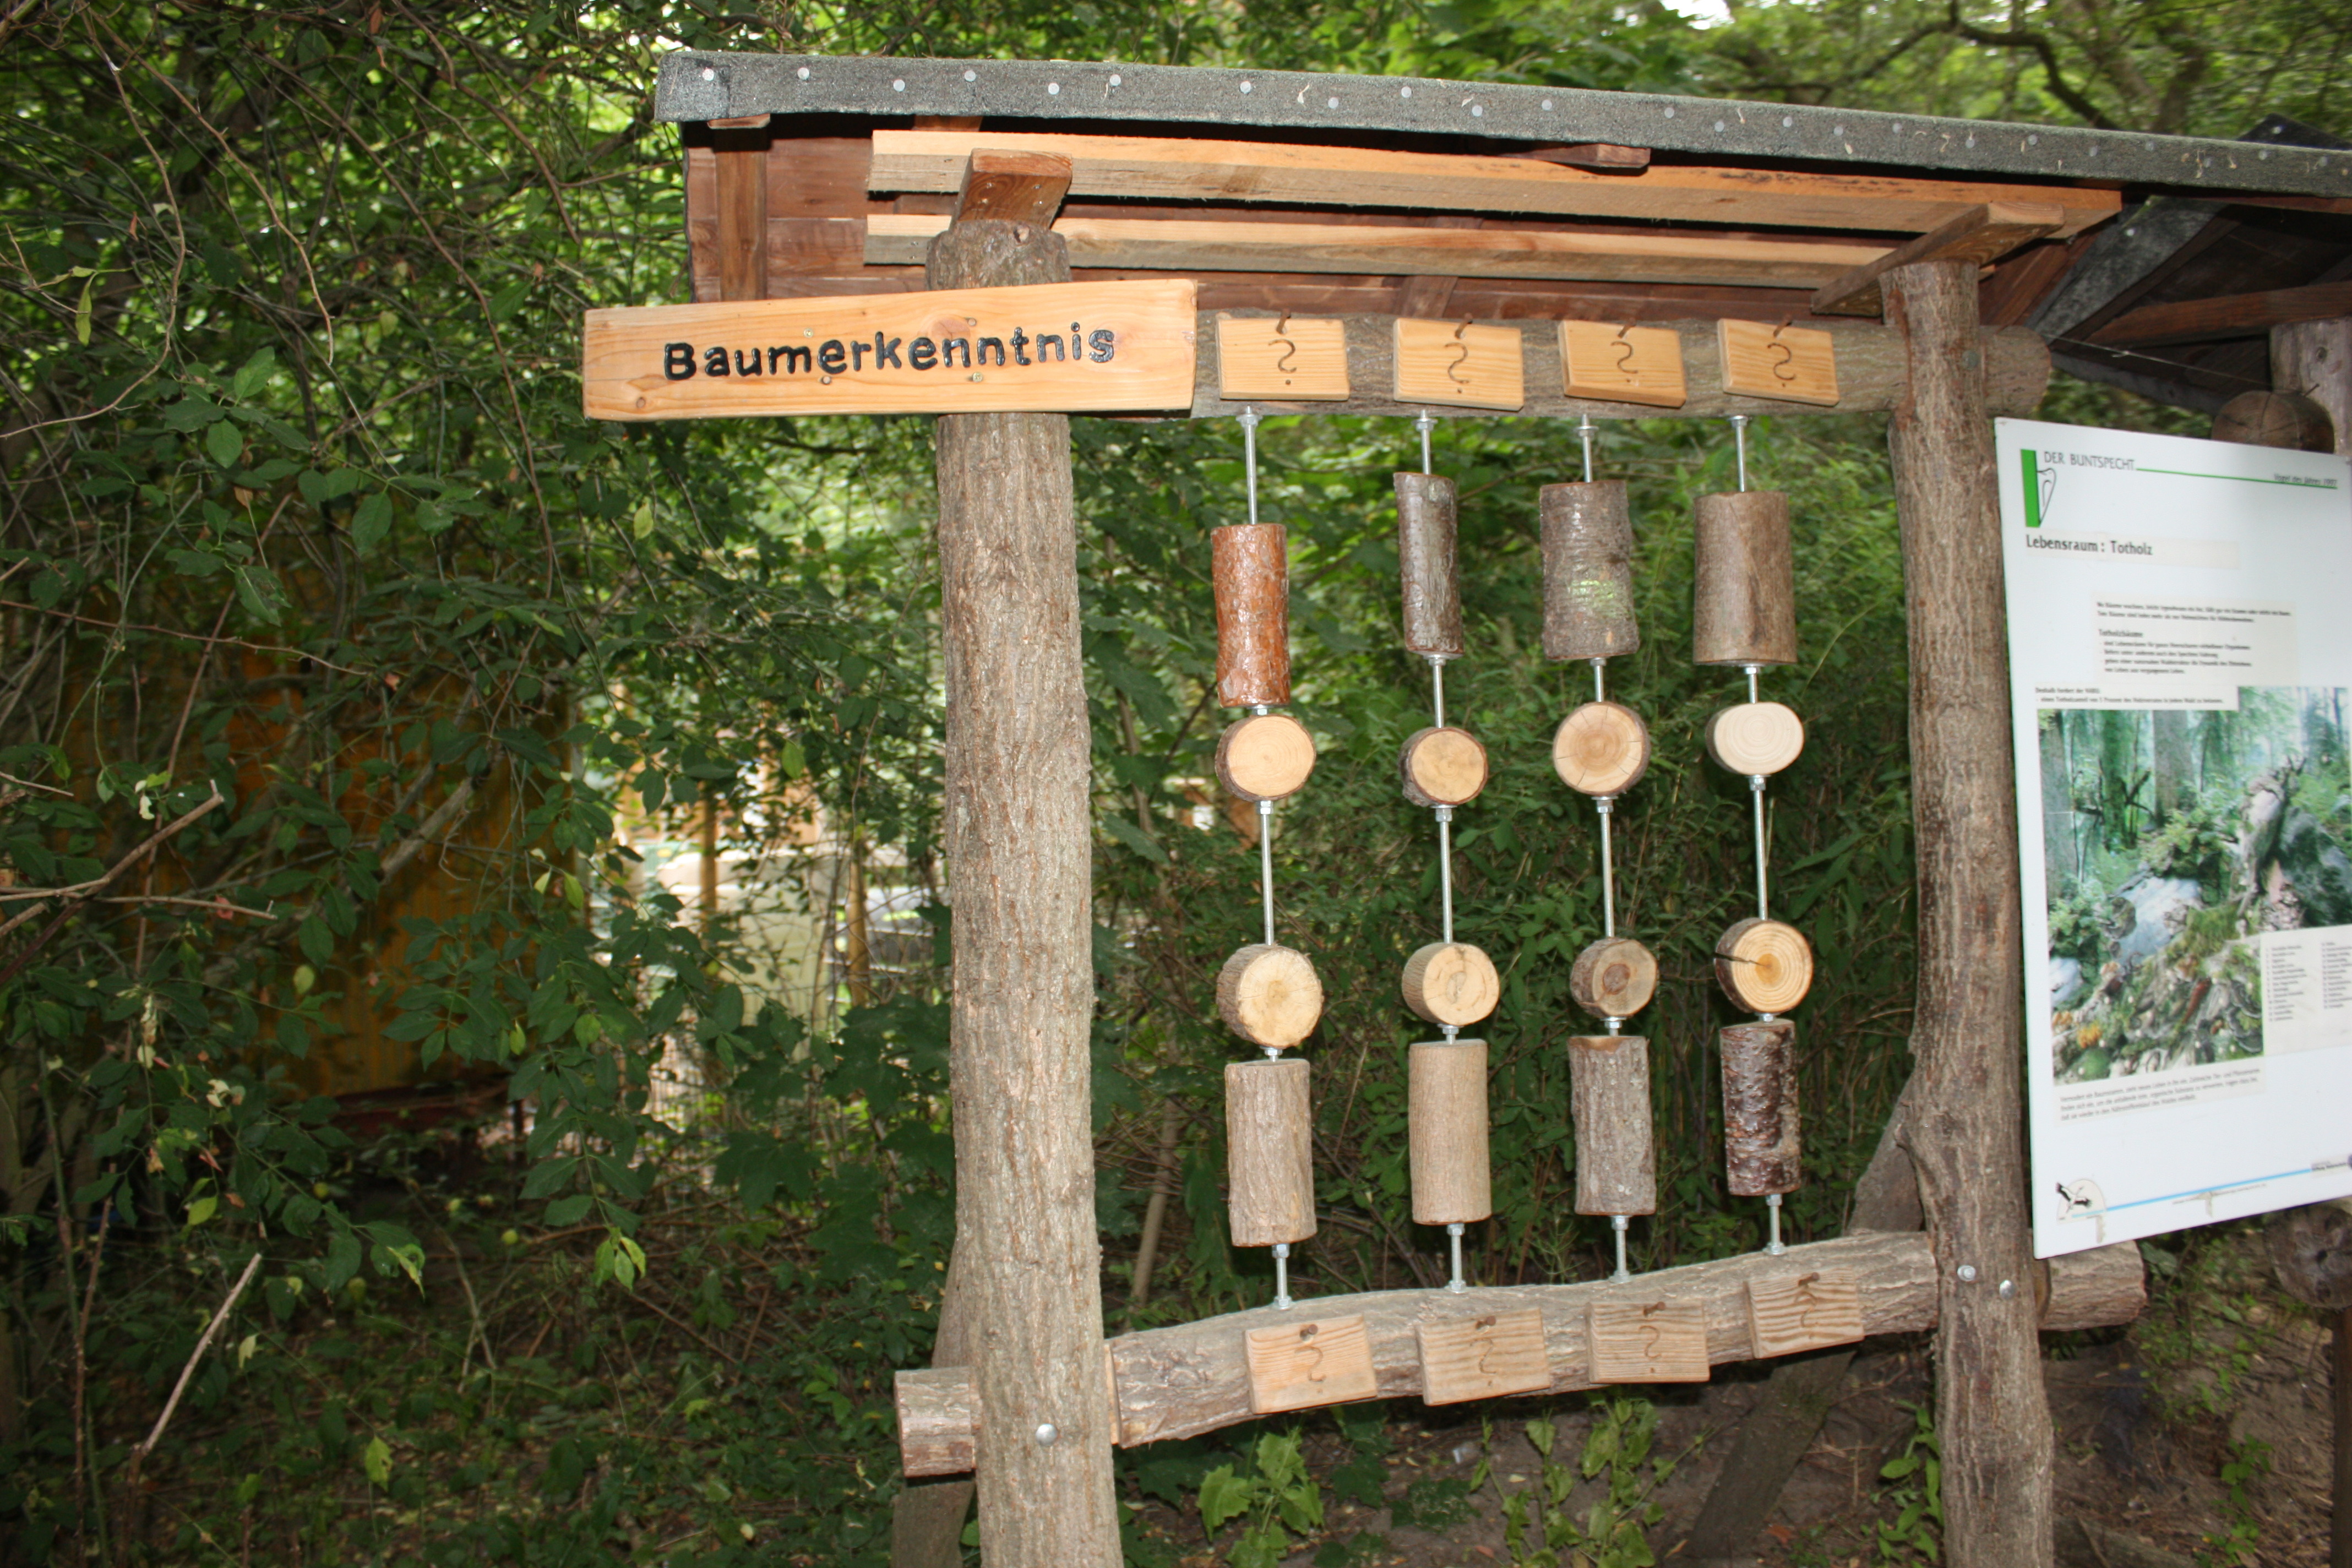 An der "Baumerkenntnis" können die BesucherInnen ihr Wissen rund um die verschiedenen Baumarten testen und erweitern